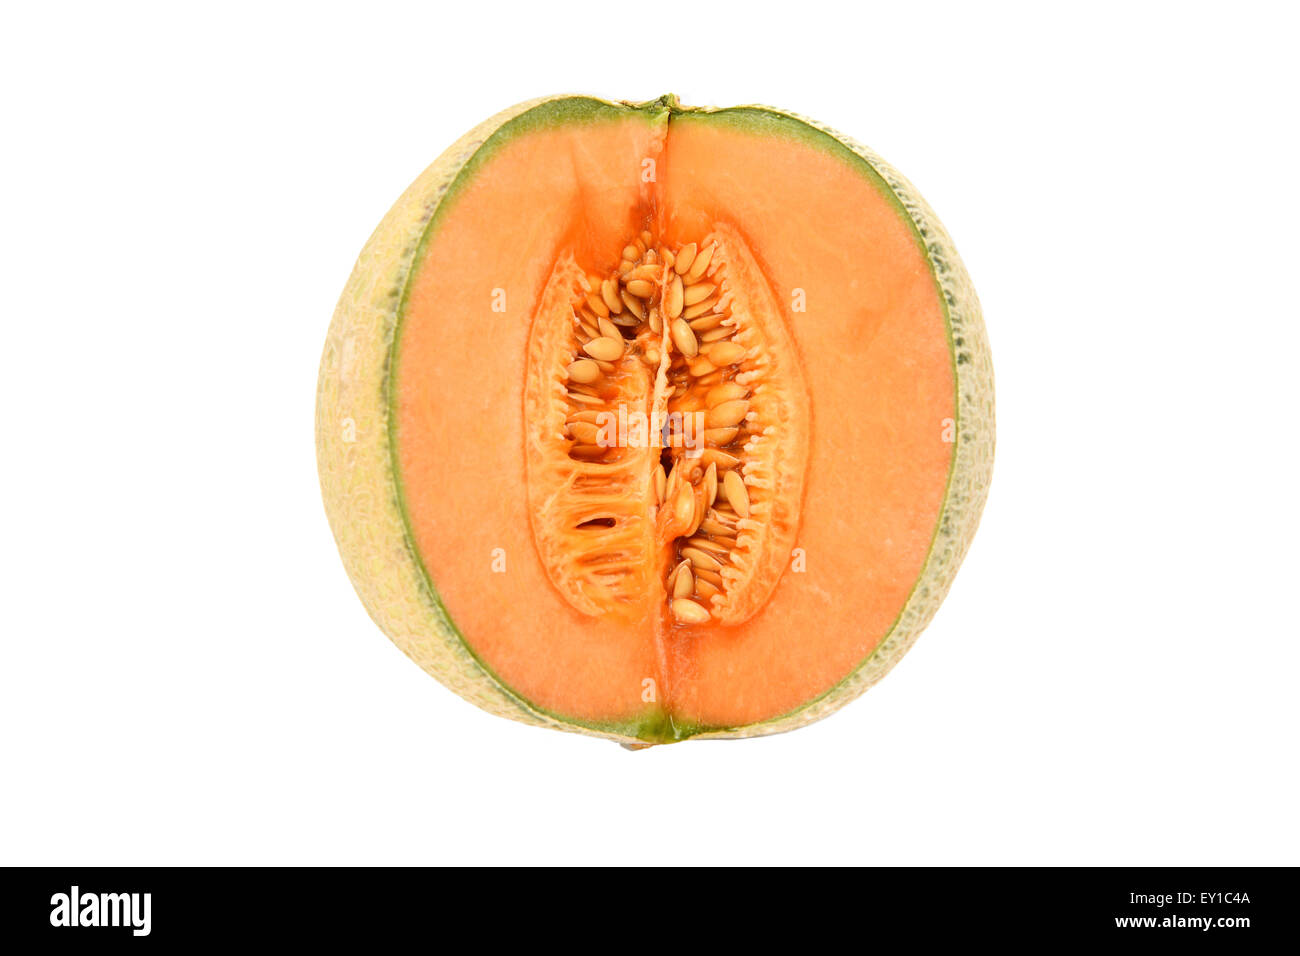 Saftige Canteloupe Melone in Scheiben geschnitten offen für orange Fruchtfleisch und Samen in der Mitte der Frucht zeigen Stockfoto